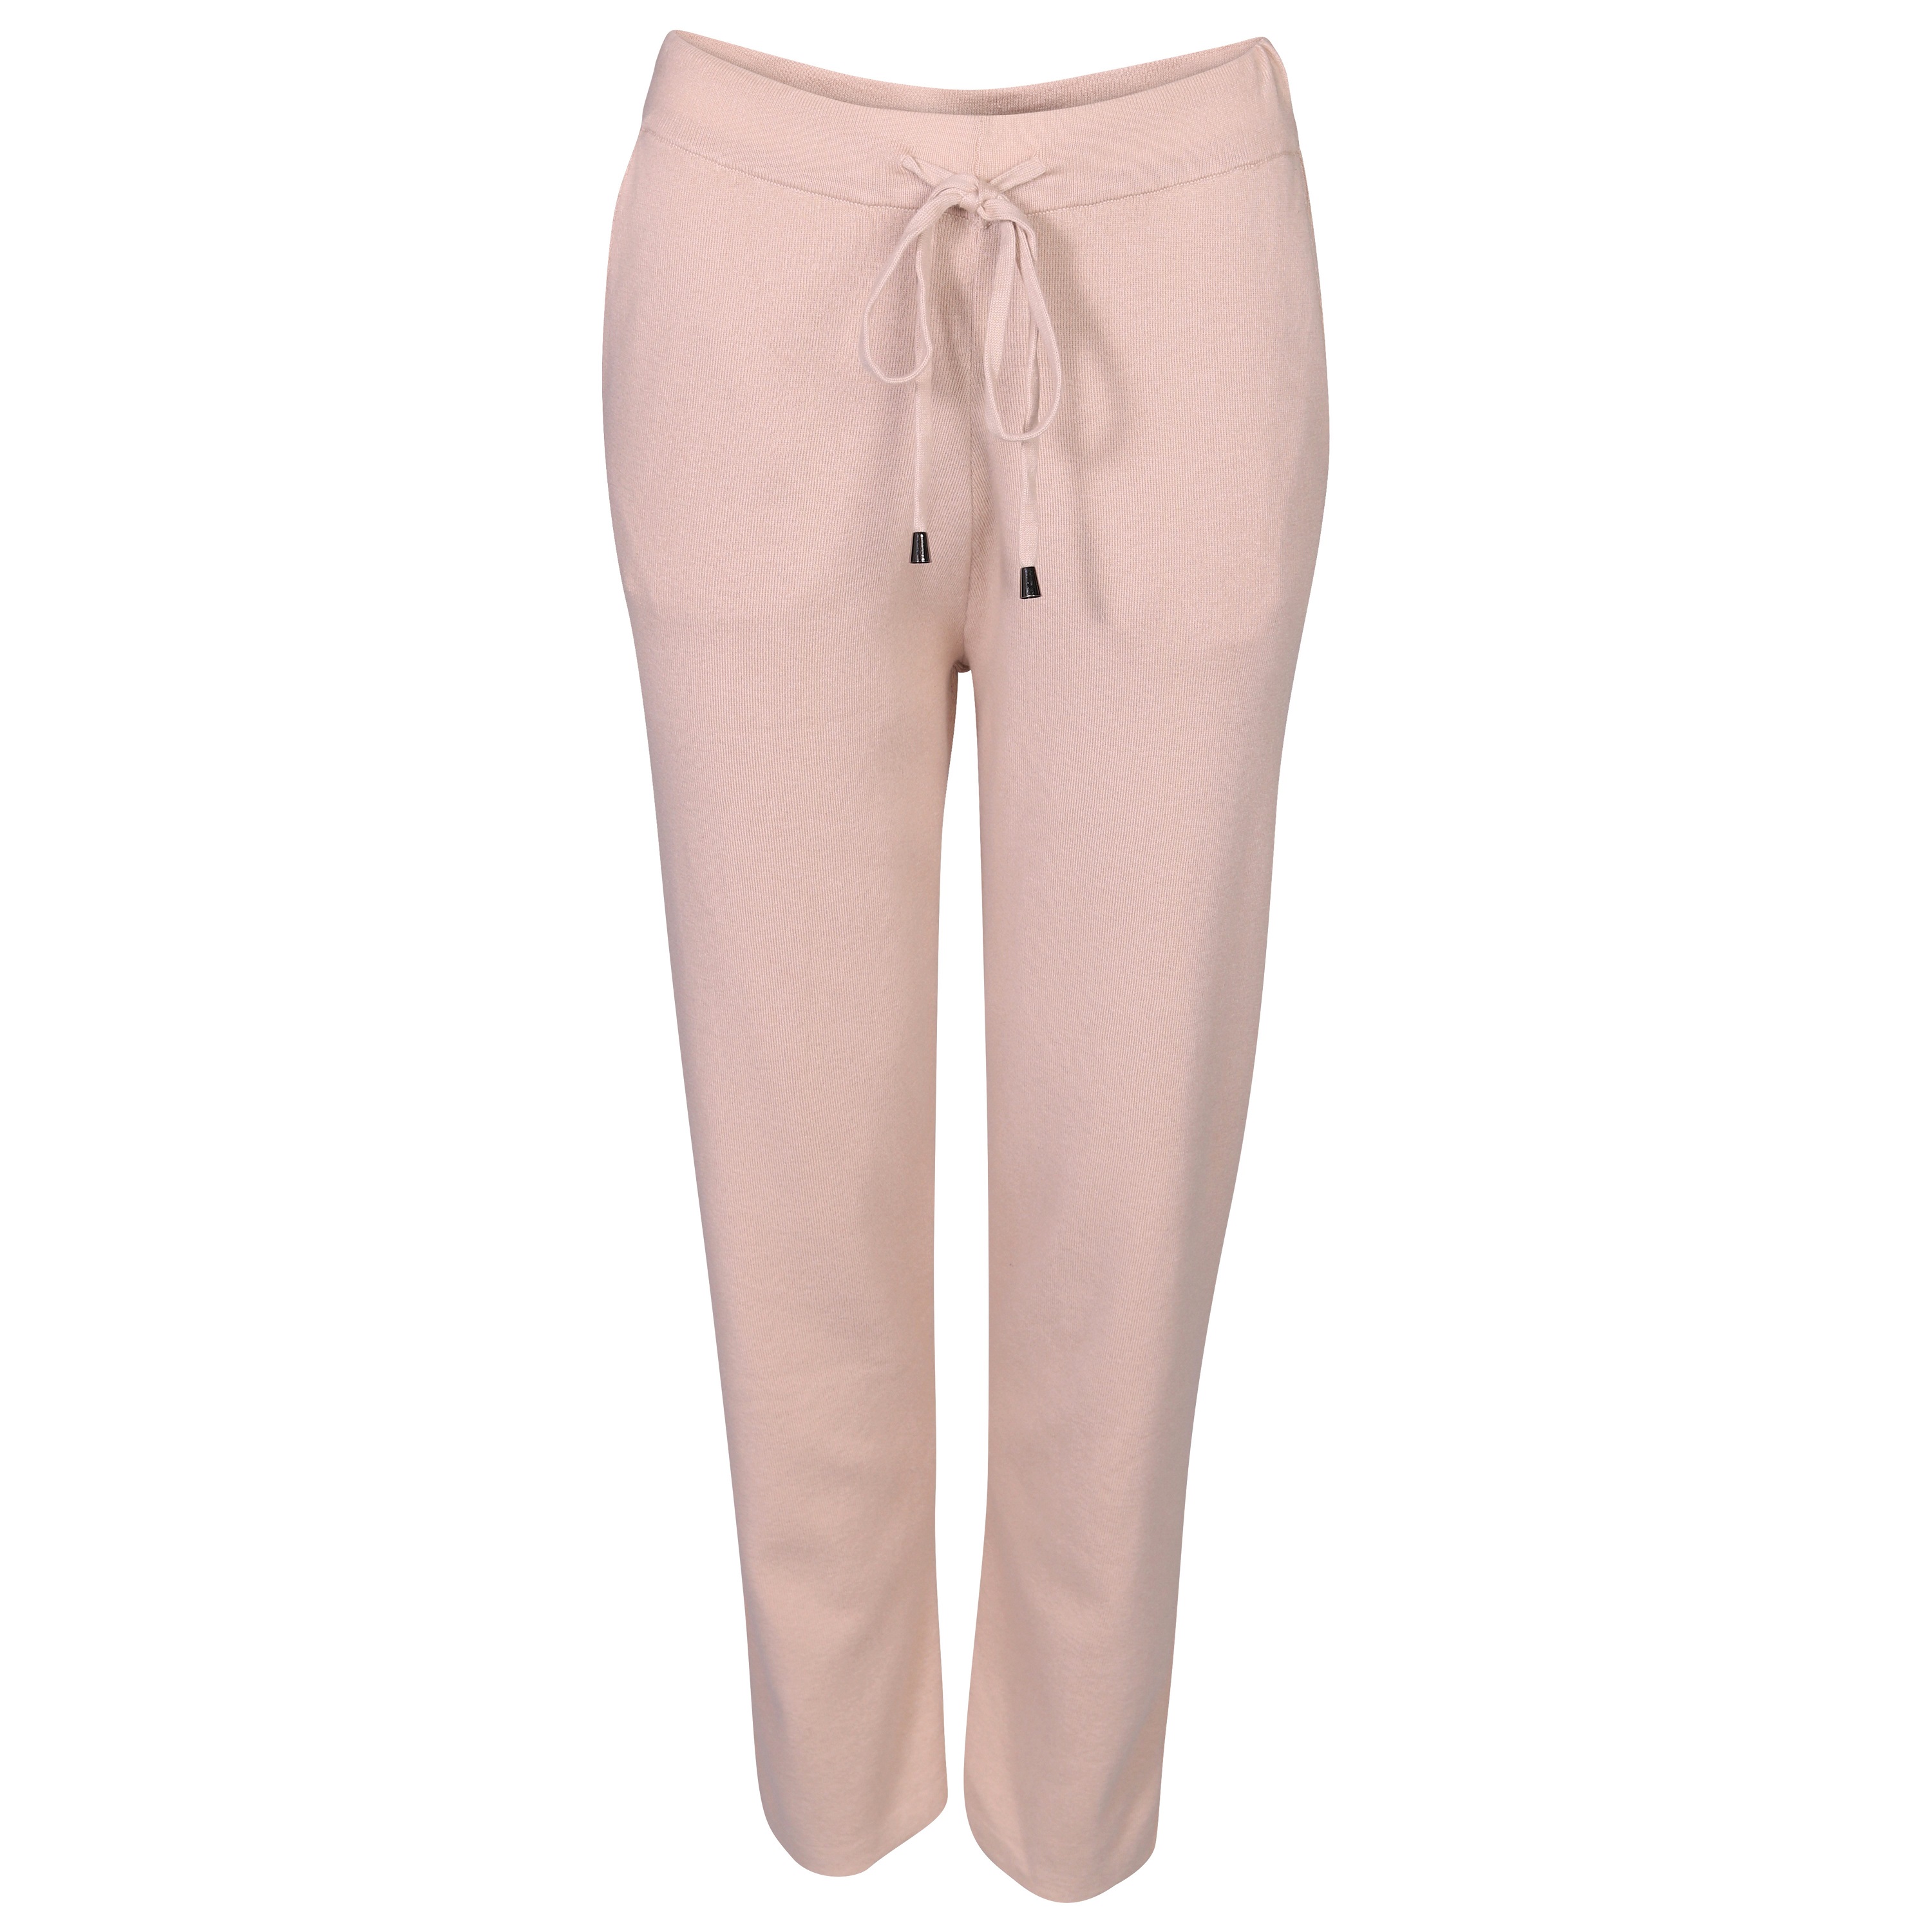 Flona Cashmere/Cotton Pants in Beige